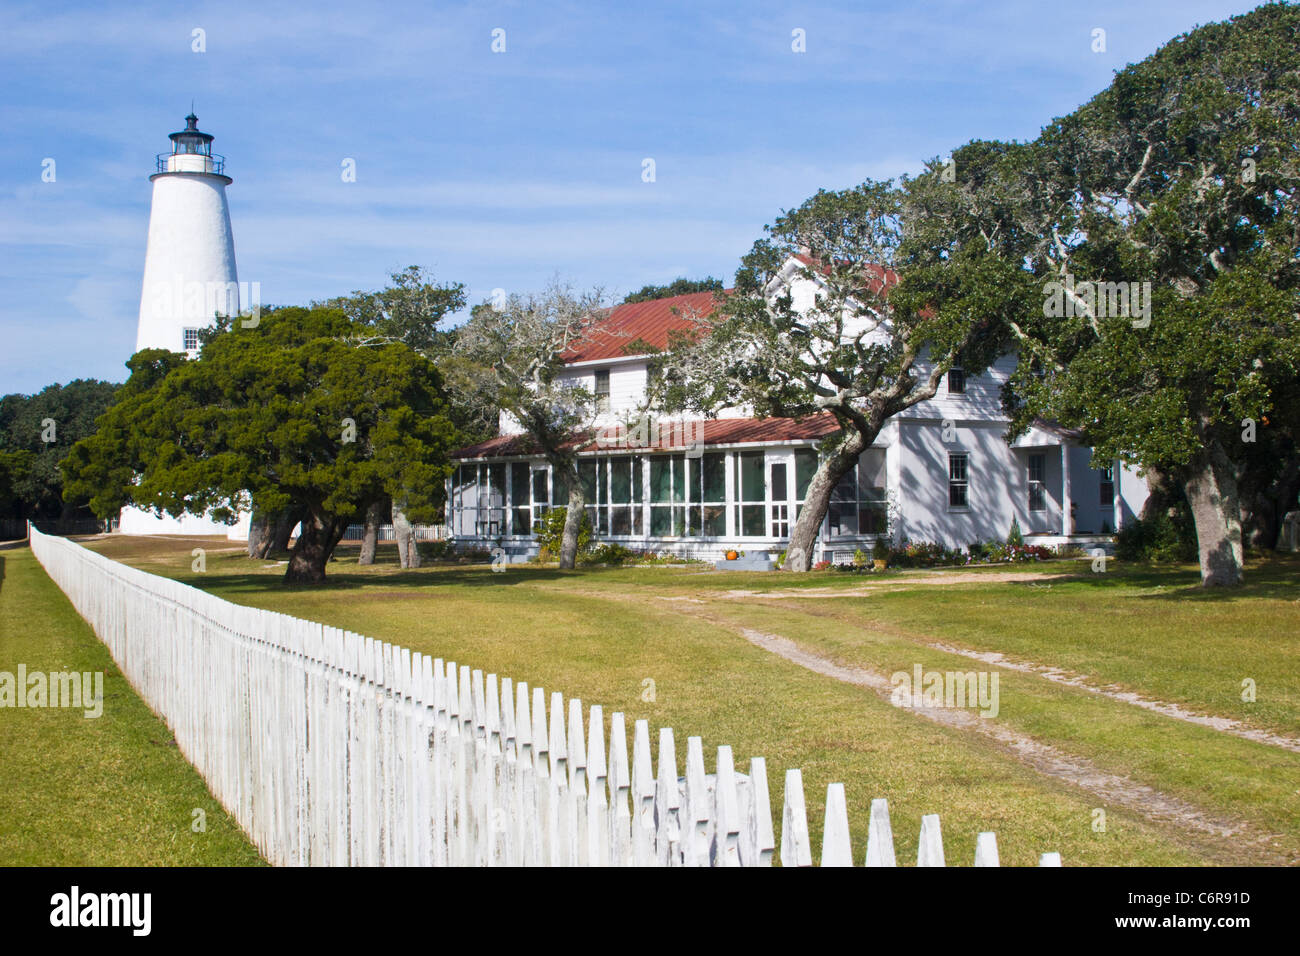 Situato nel villaggio di pescatori di Ocracoke sull isola di Ocracoke, questo è il più antico faro operativo nella Carolina del Nord. Foto Stock